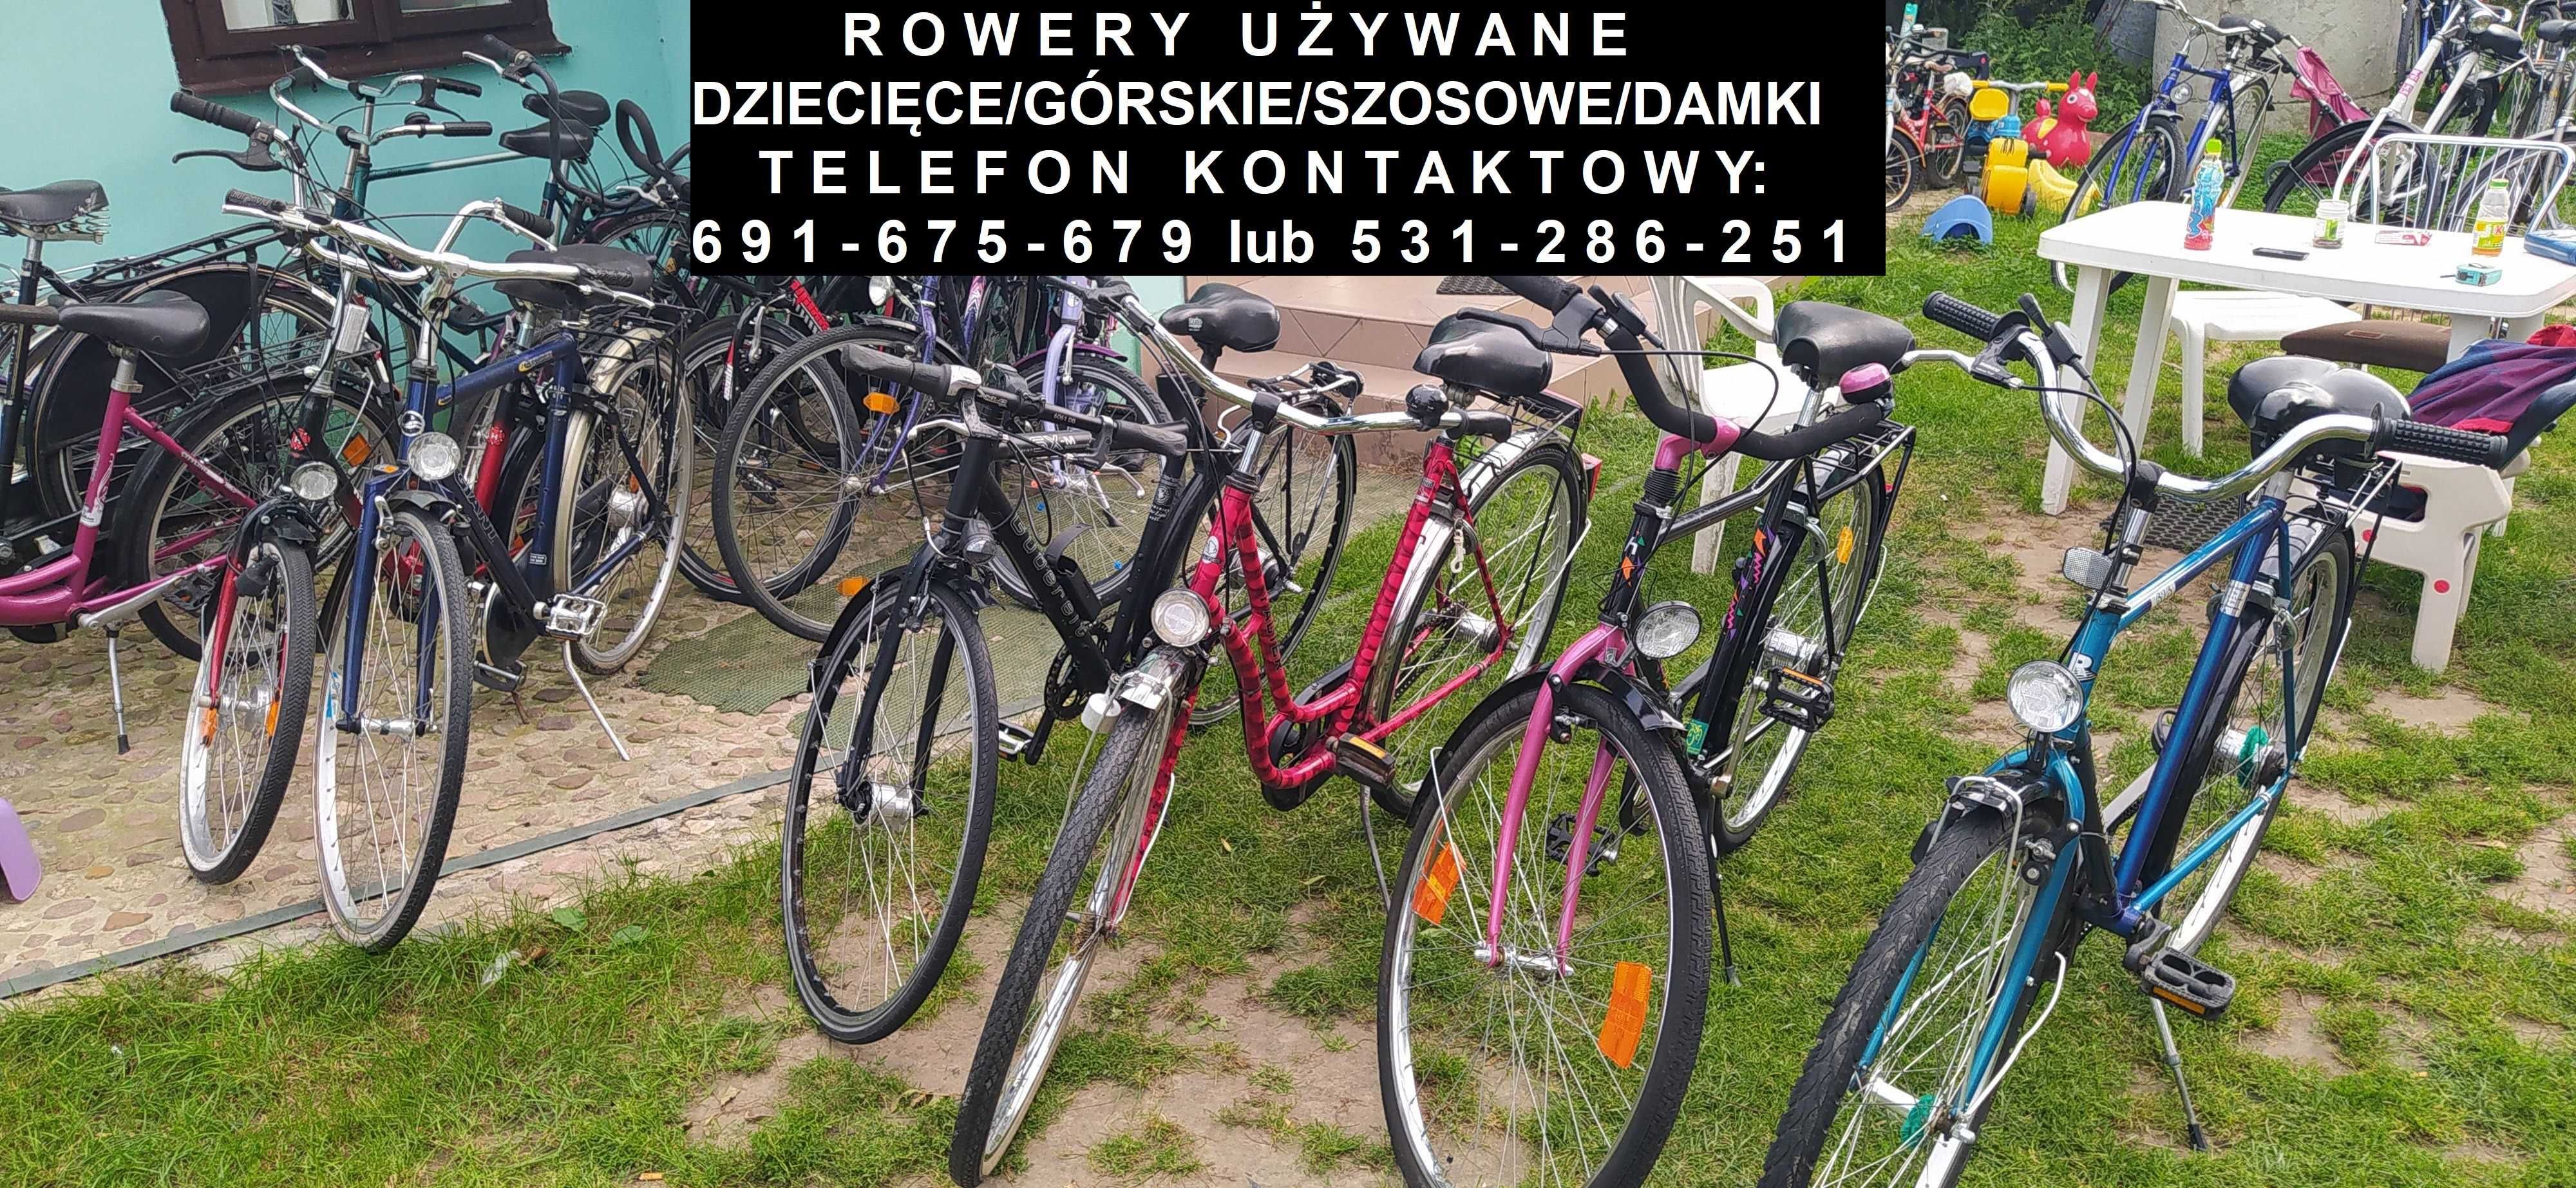 Rower używany - ceny od 150 zł